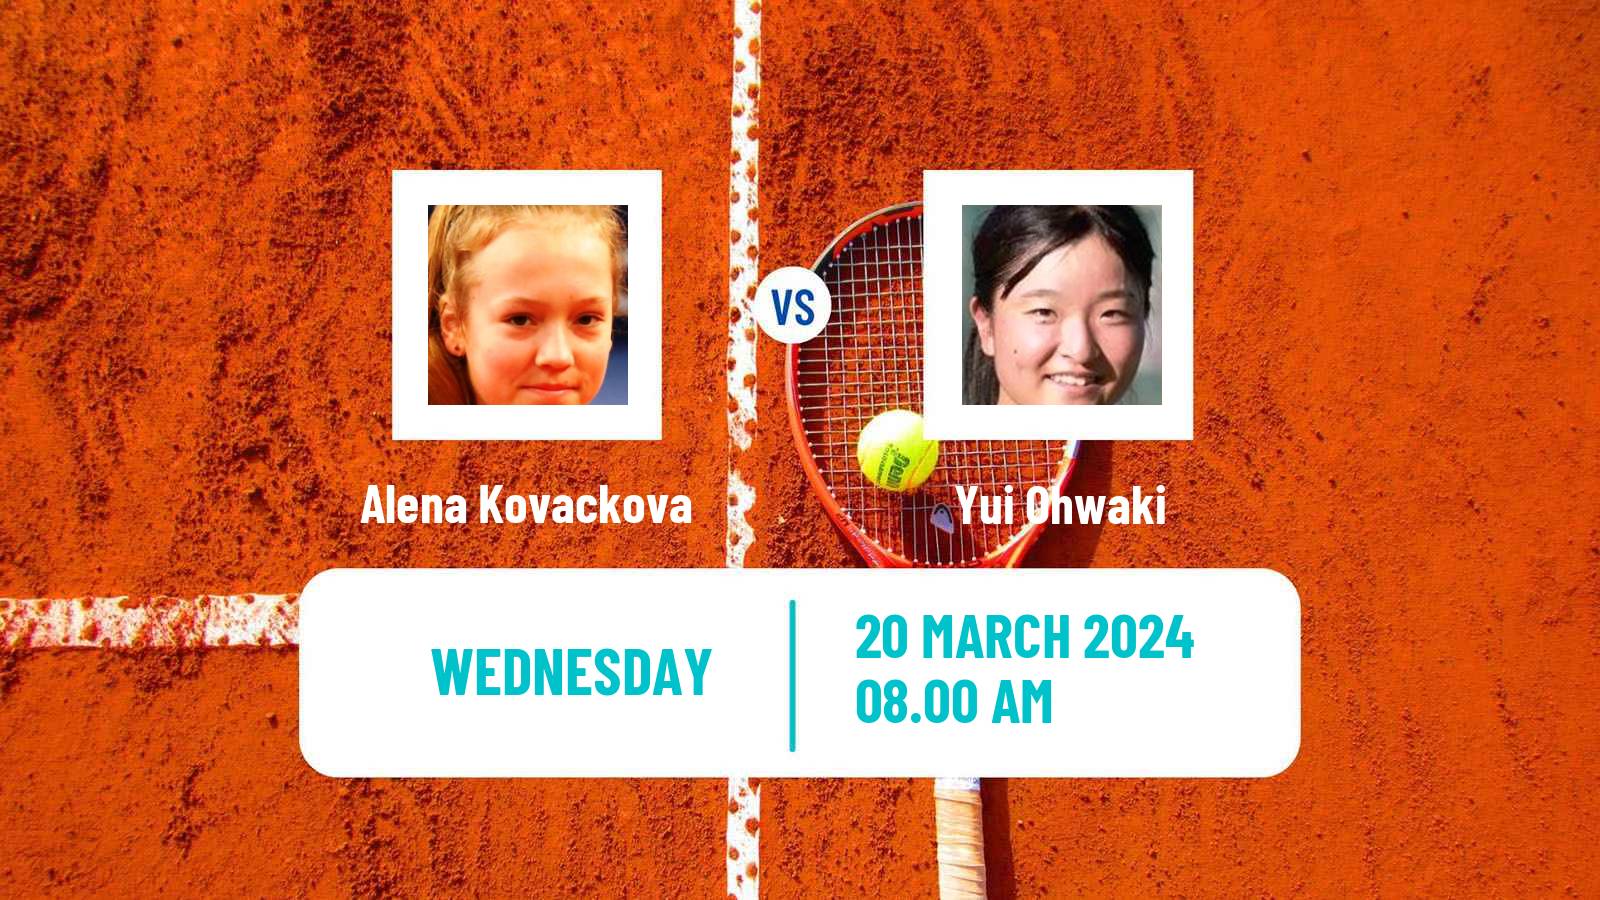 Tennis ITF W15 Sharm Elsheikh 7 Women Alena Kovackova - Yui Ohwaki